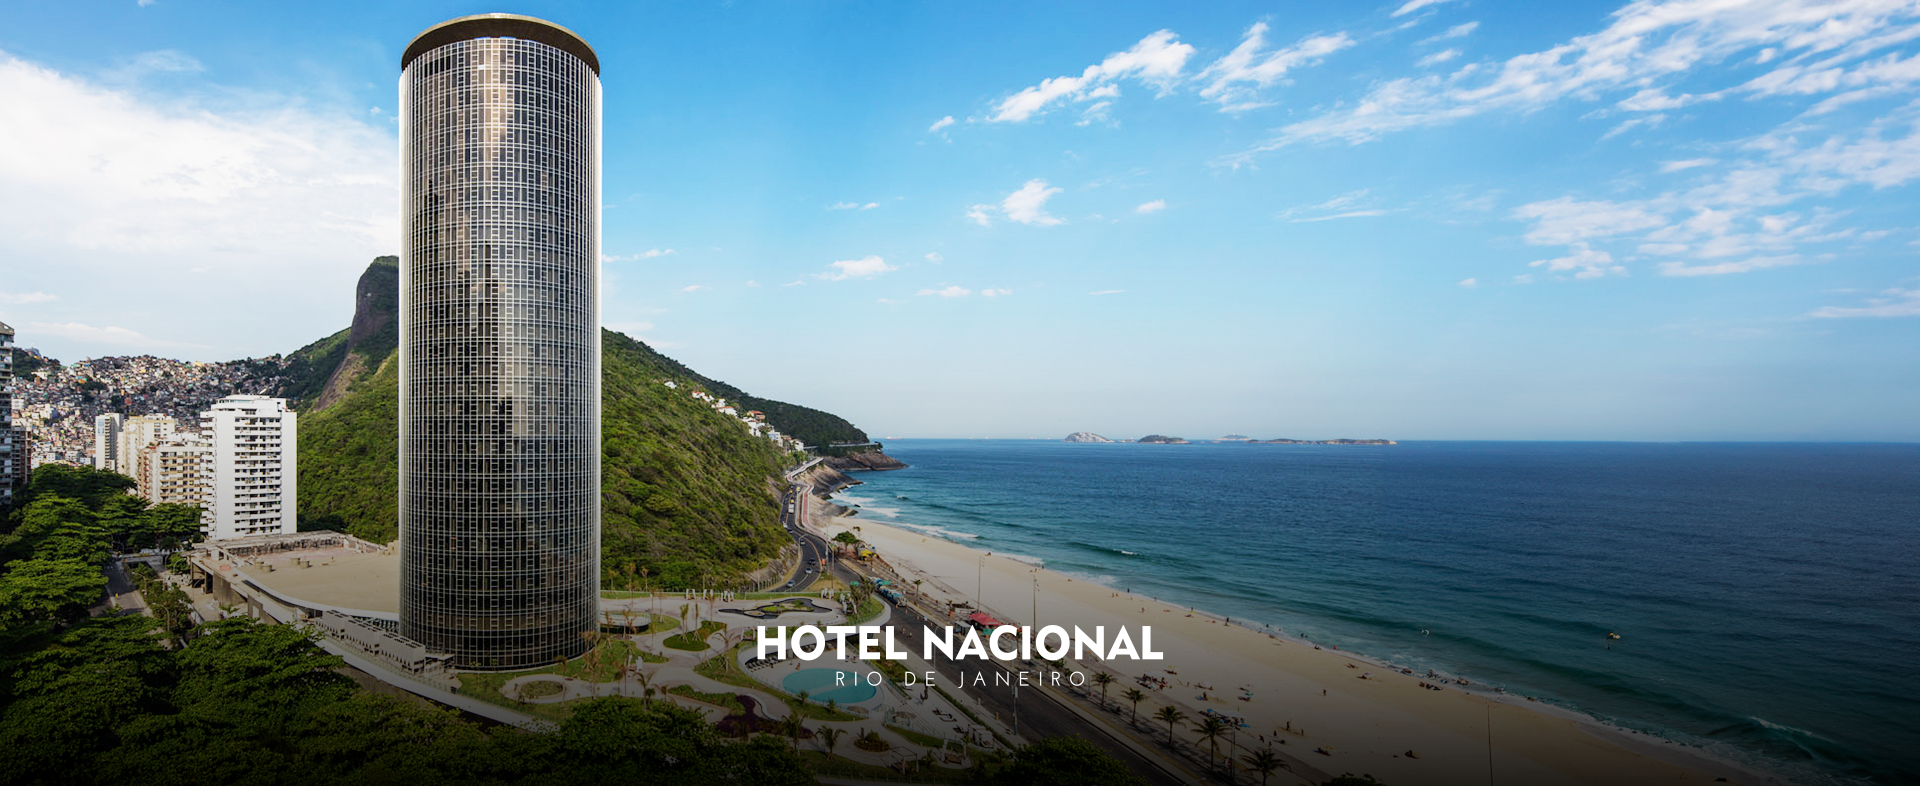 Hotel Nacional_Rio de Janeiro